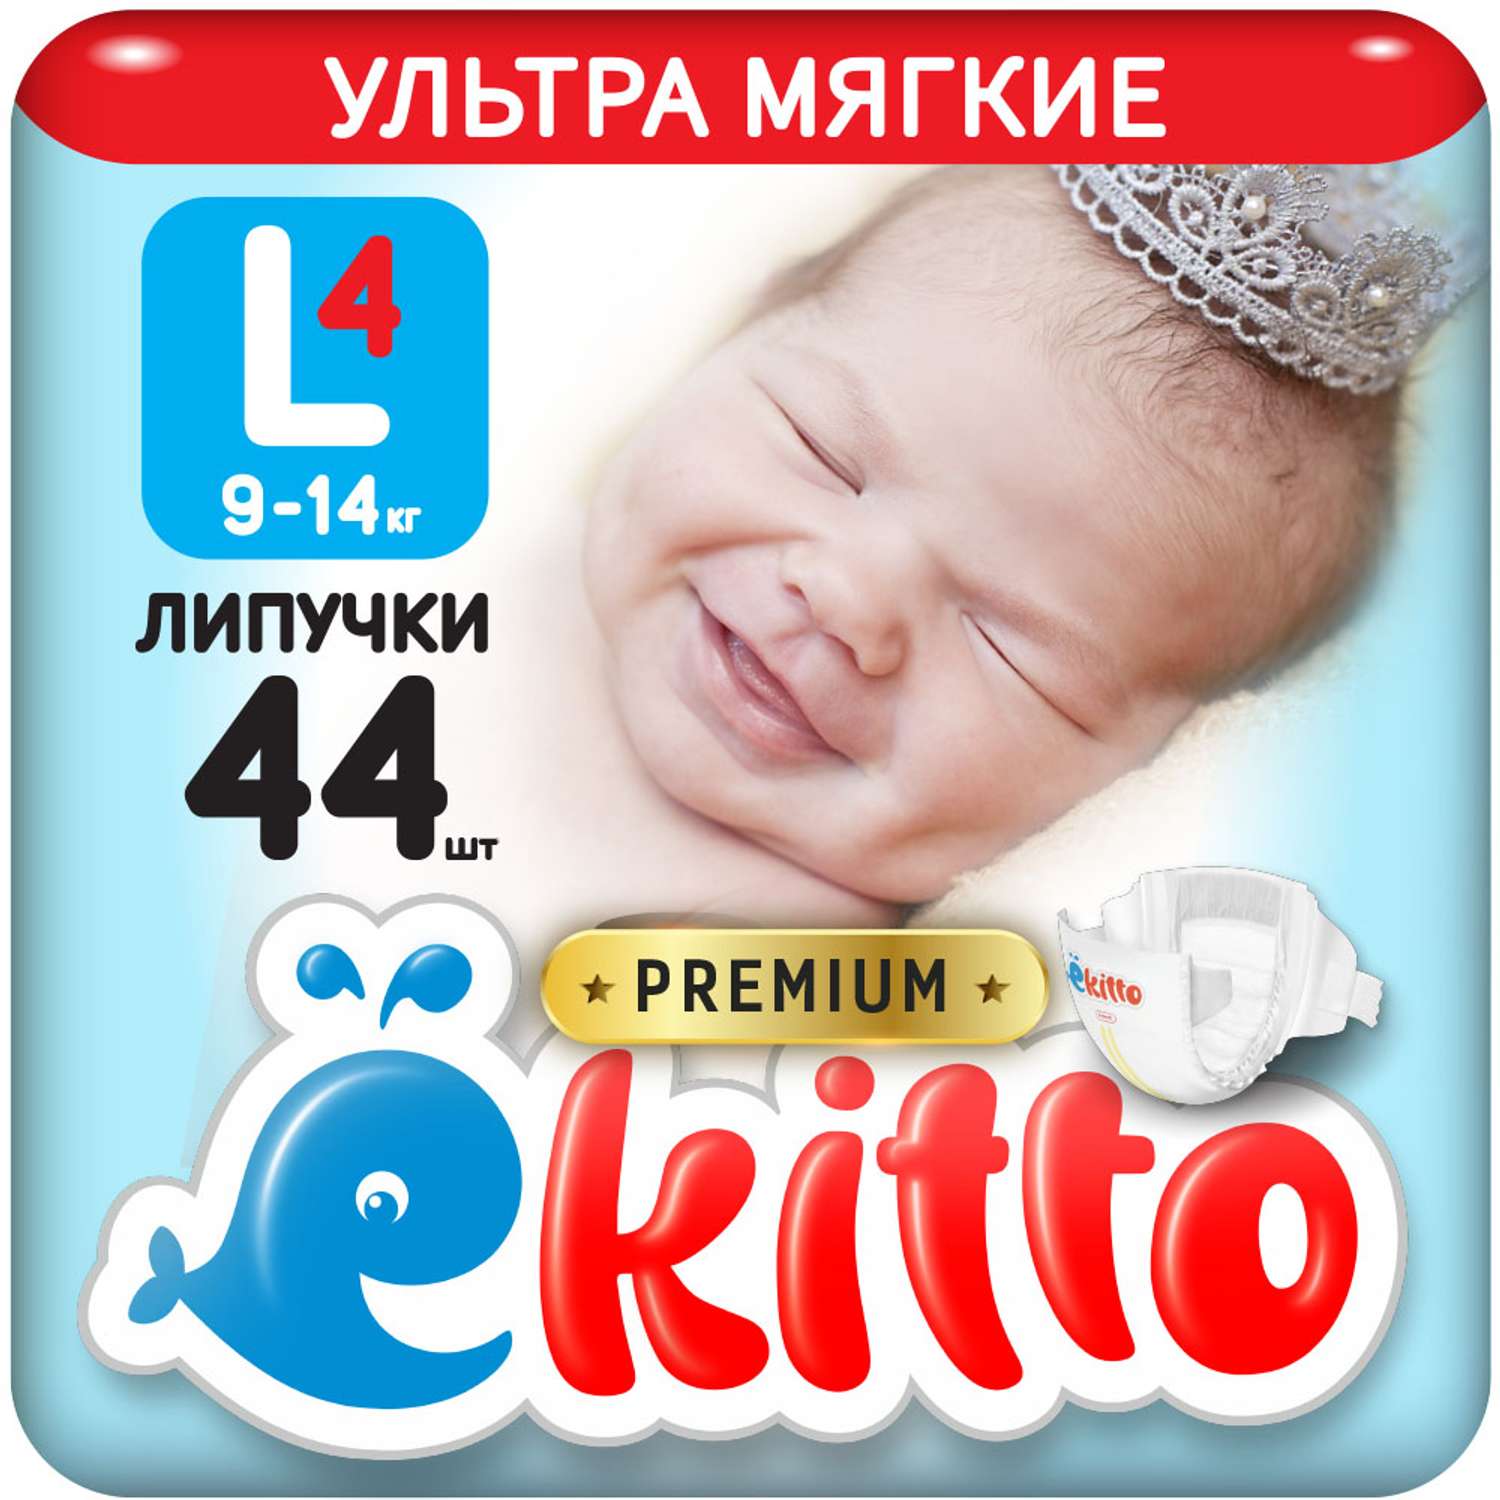 Подгузники Ekitto 4 размер L для новорожденных детей от 9-14 кг 44 шт - фото 1